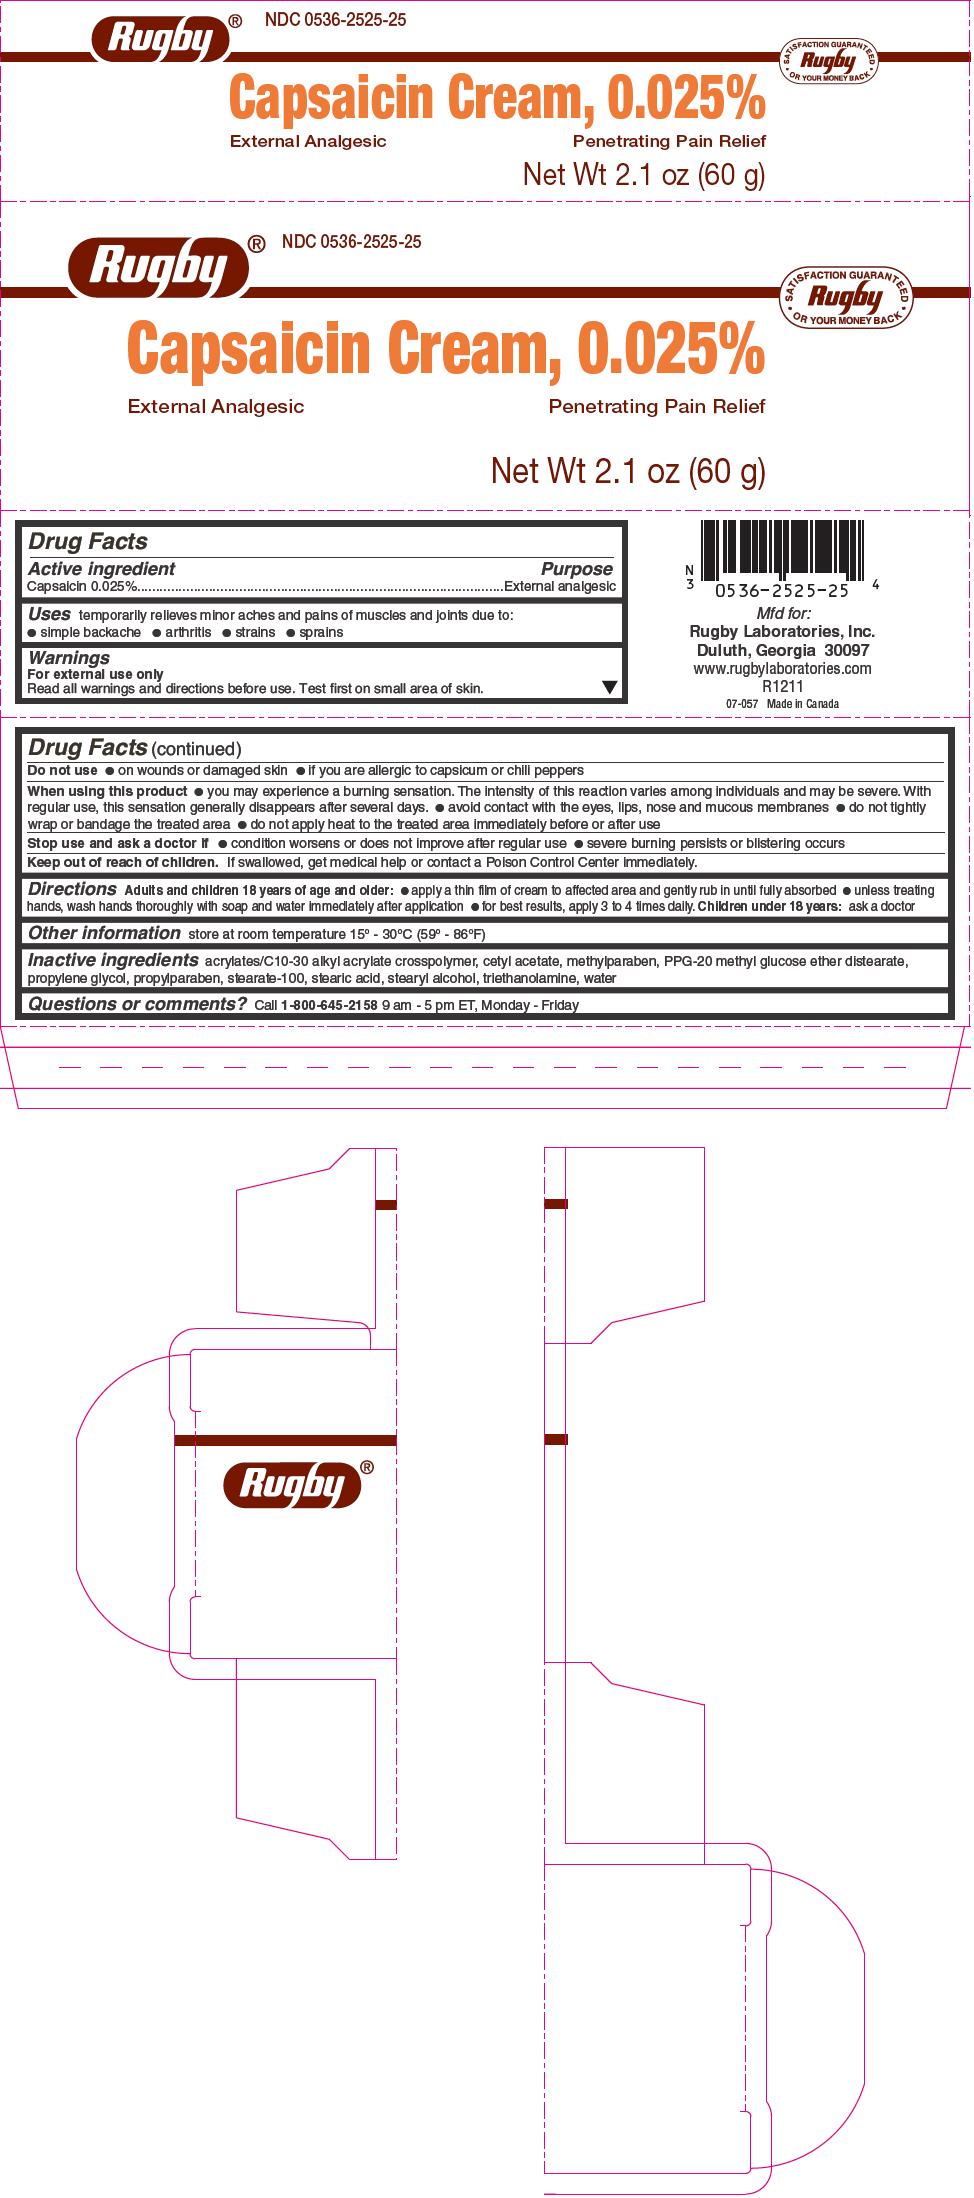 PRINCIPAL DISPLAY PANEL - 60 g Tube Carton